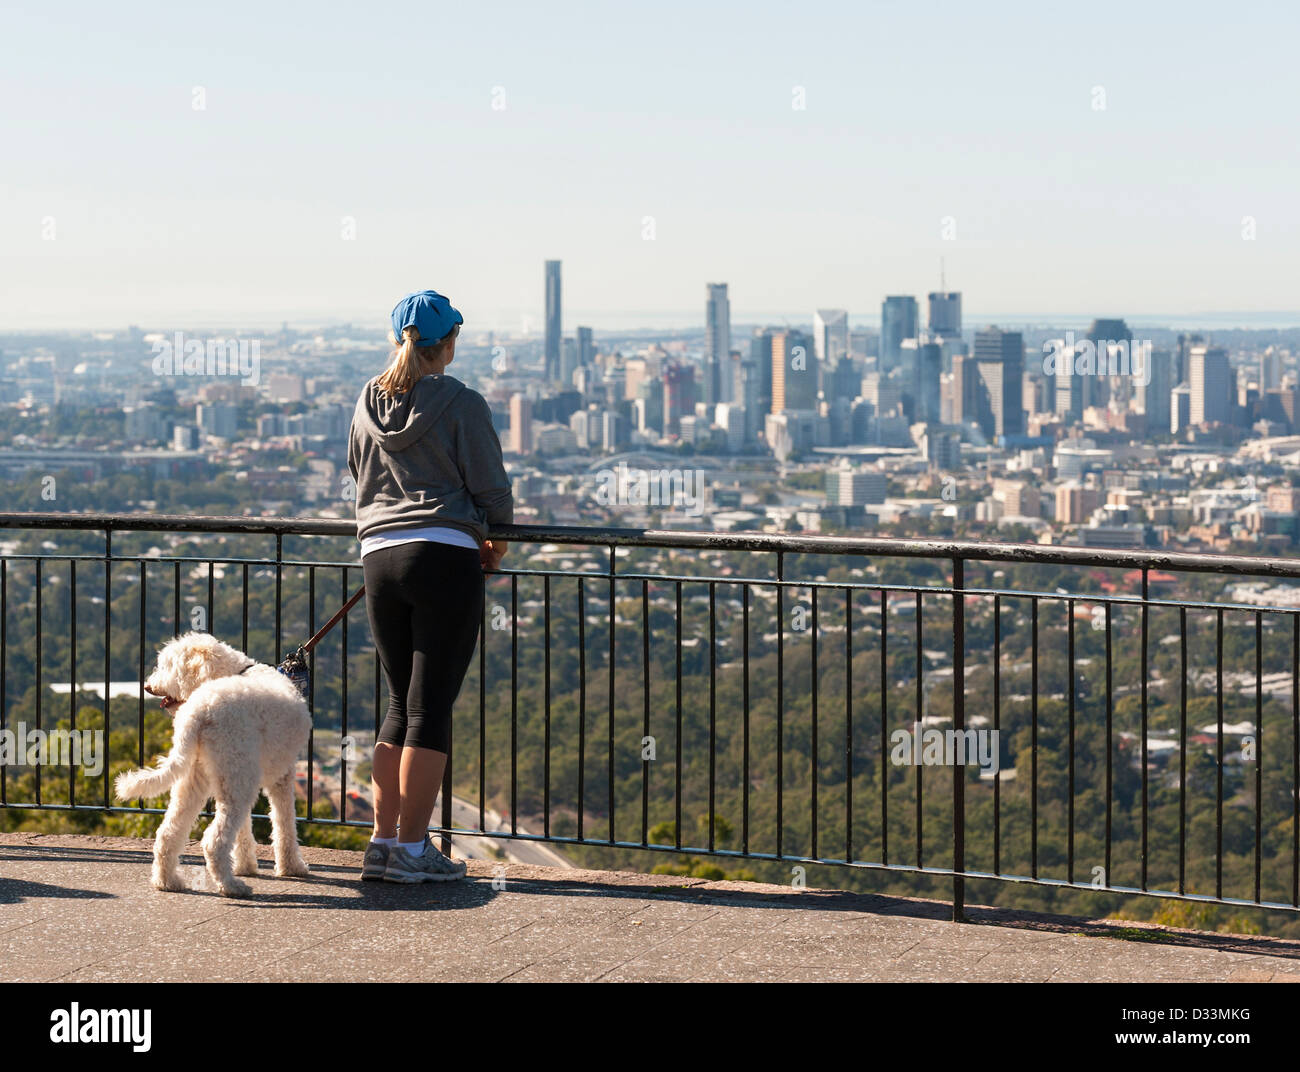 La ville de Brisbane, Queensland, Australie - Femme avec chien à plus de Mount Coot-Tha viewpoint Banque D'Images